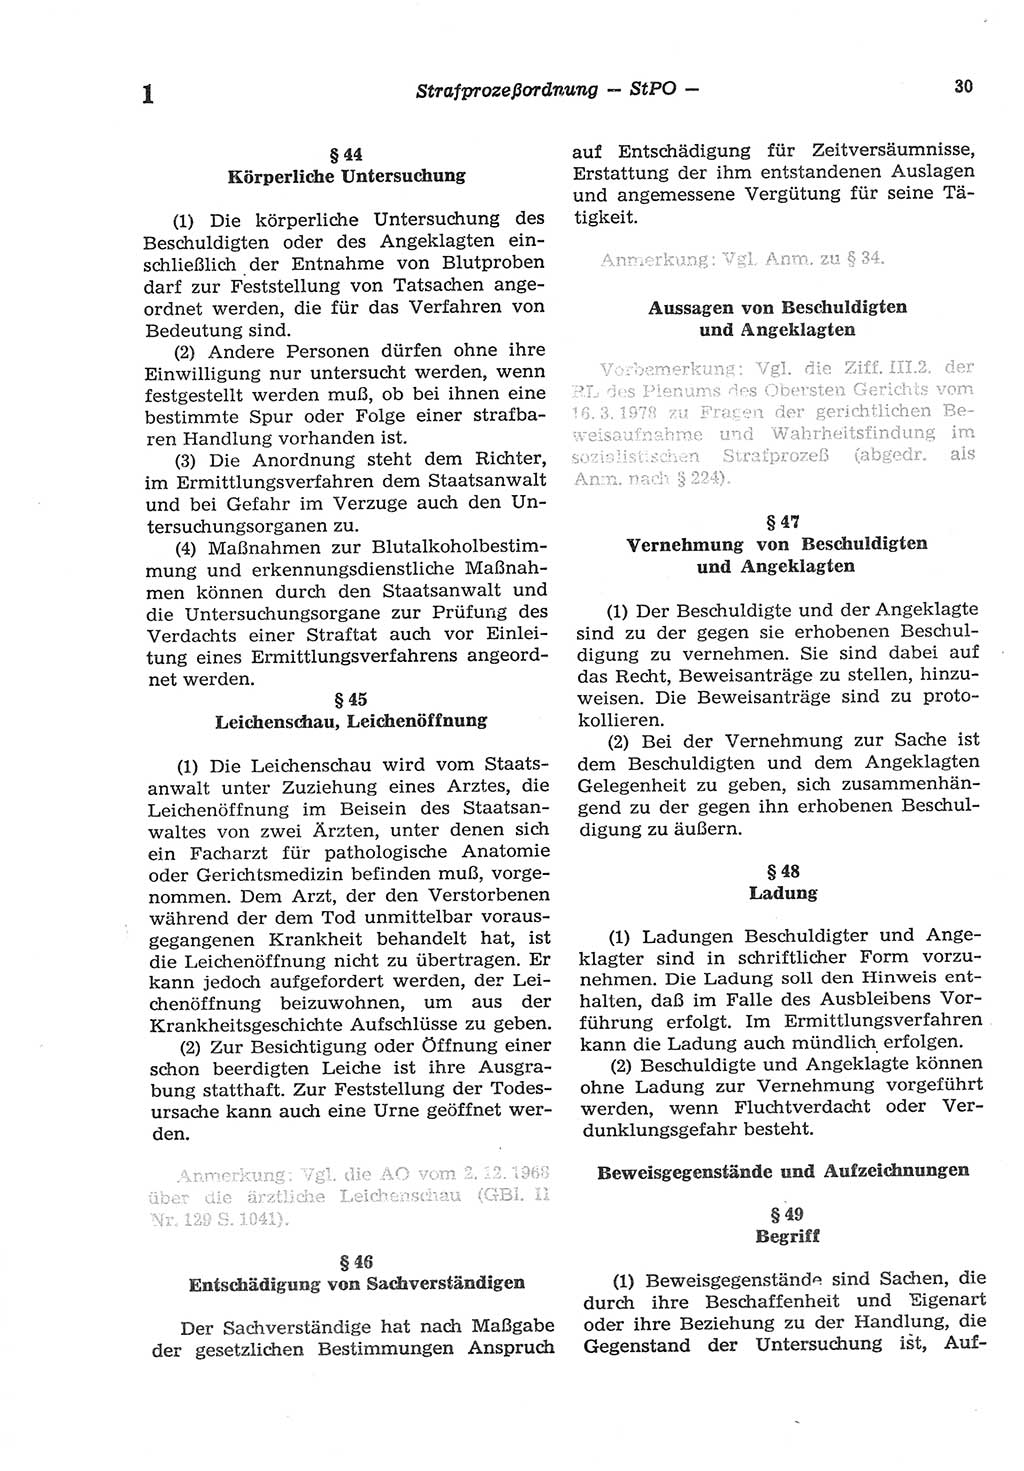 Strafprozeßordnung (StPO) der Deutschen Demokratischen Republik (DDR) sowie angrenzende Gesetze und Bestimmungen 1977, Seite 30 (StPO DDR Ges. Best. 1977, S. 30)